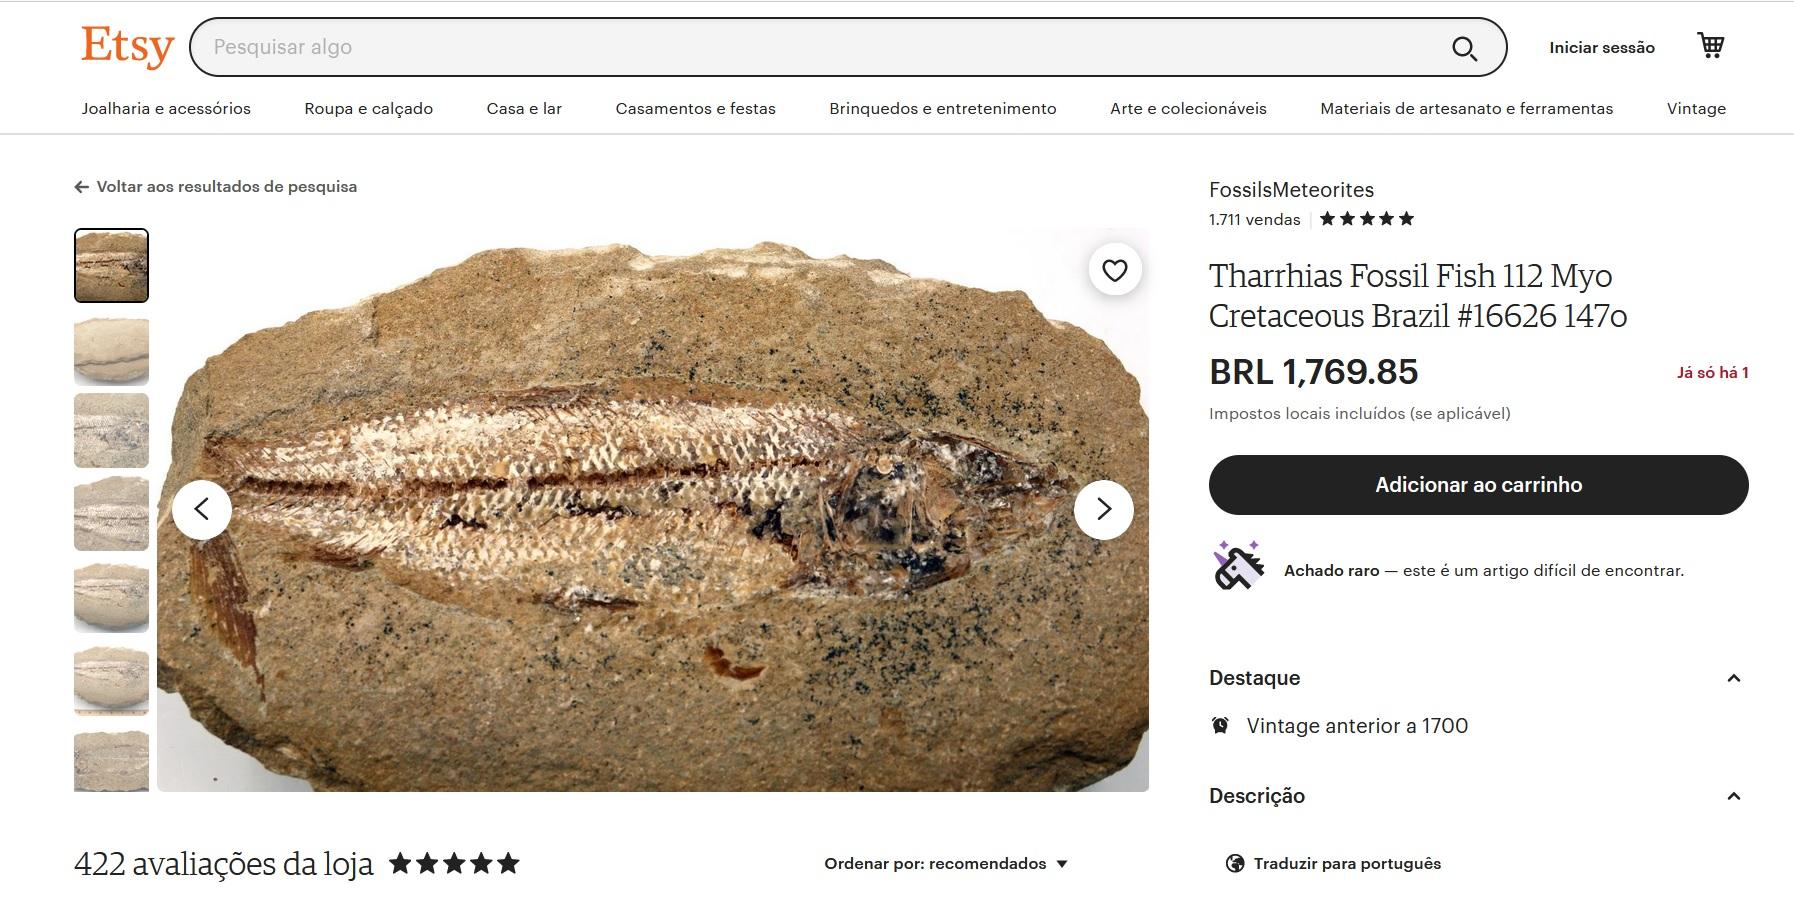 O perfil chamado FossilsMeteorites também oferece outros 544 artigos, incluindo outros fósseis de várias partes do mundo